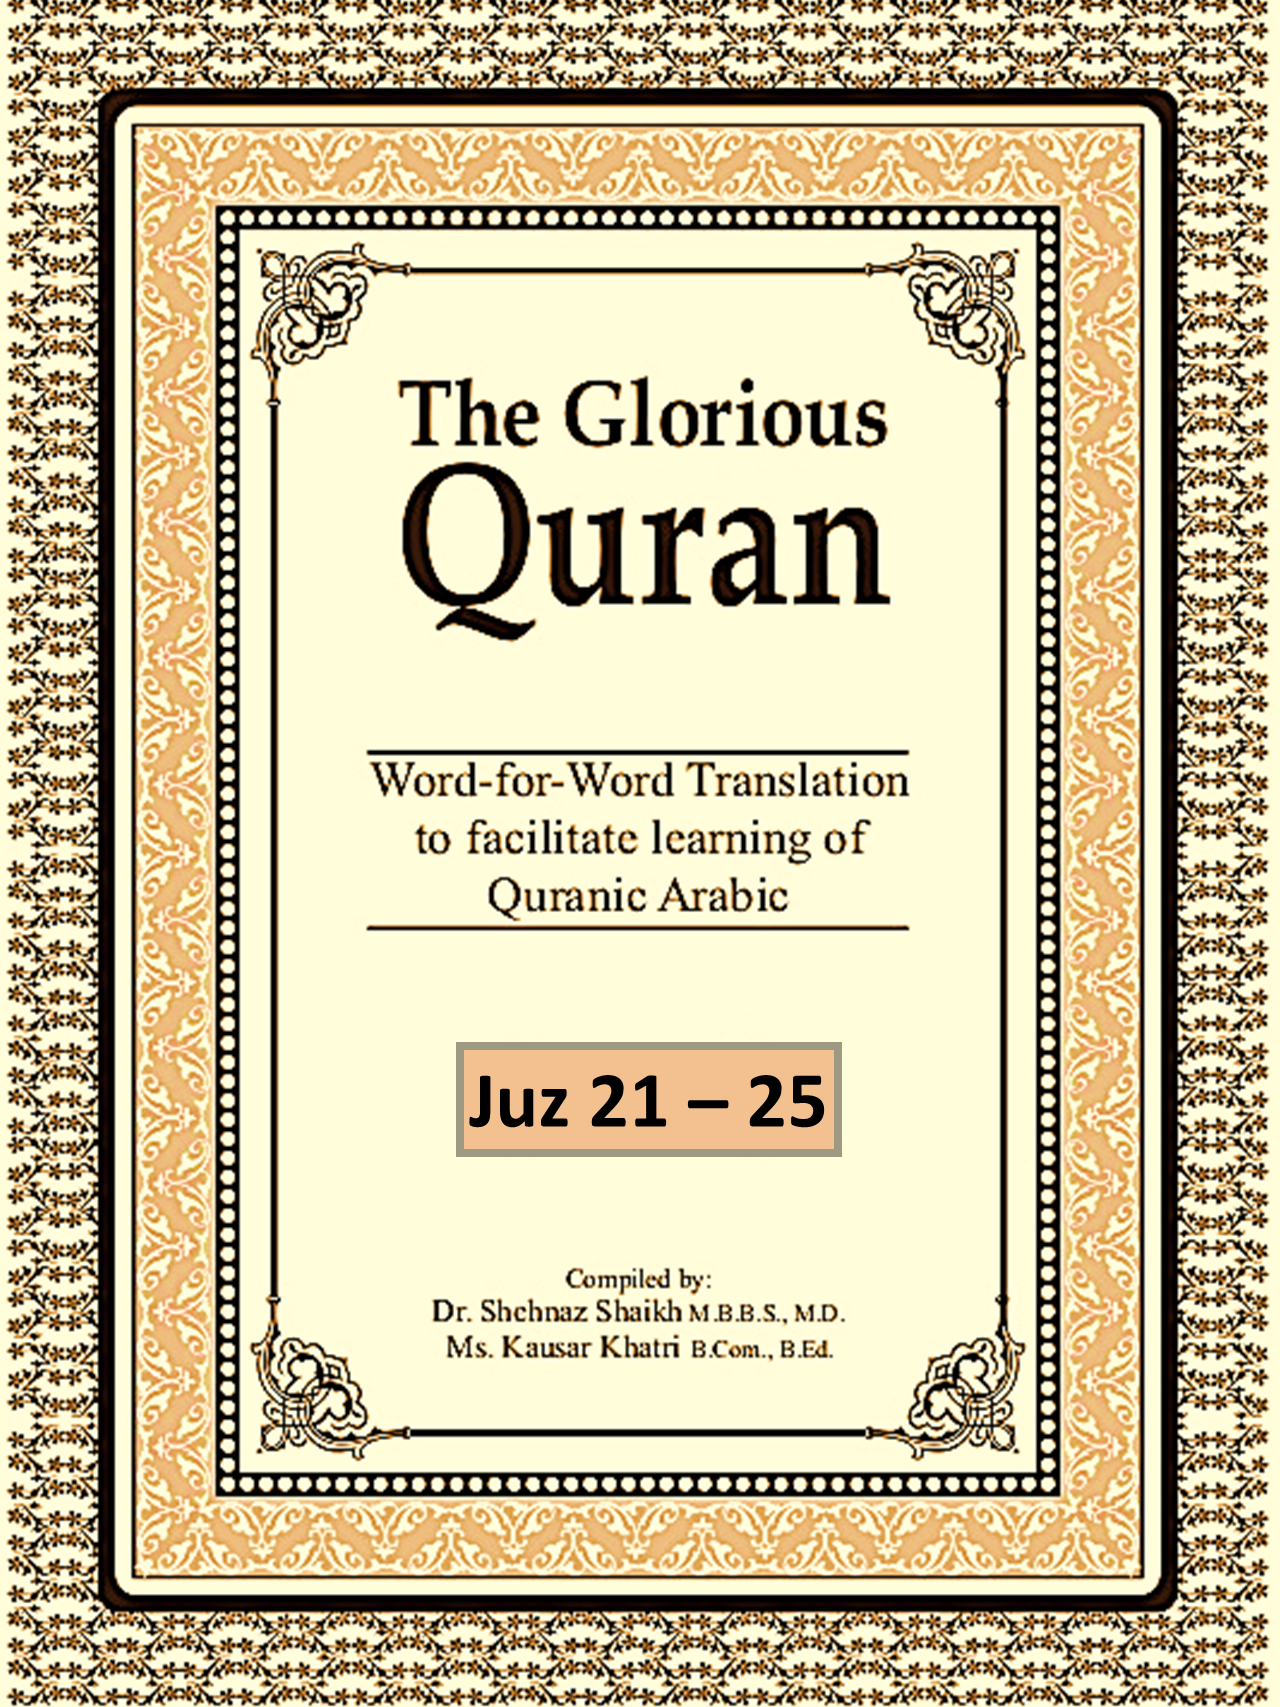 The Glorious Quran Vol 1 (Juz 21-25)